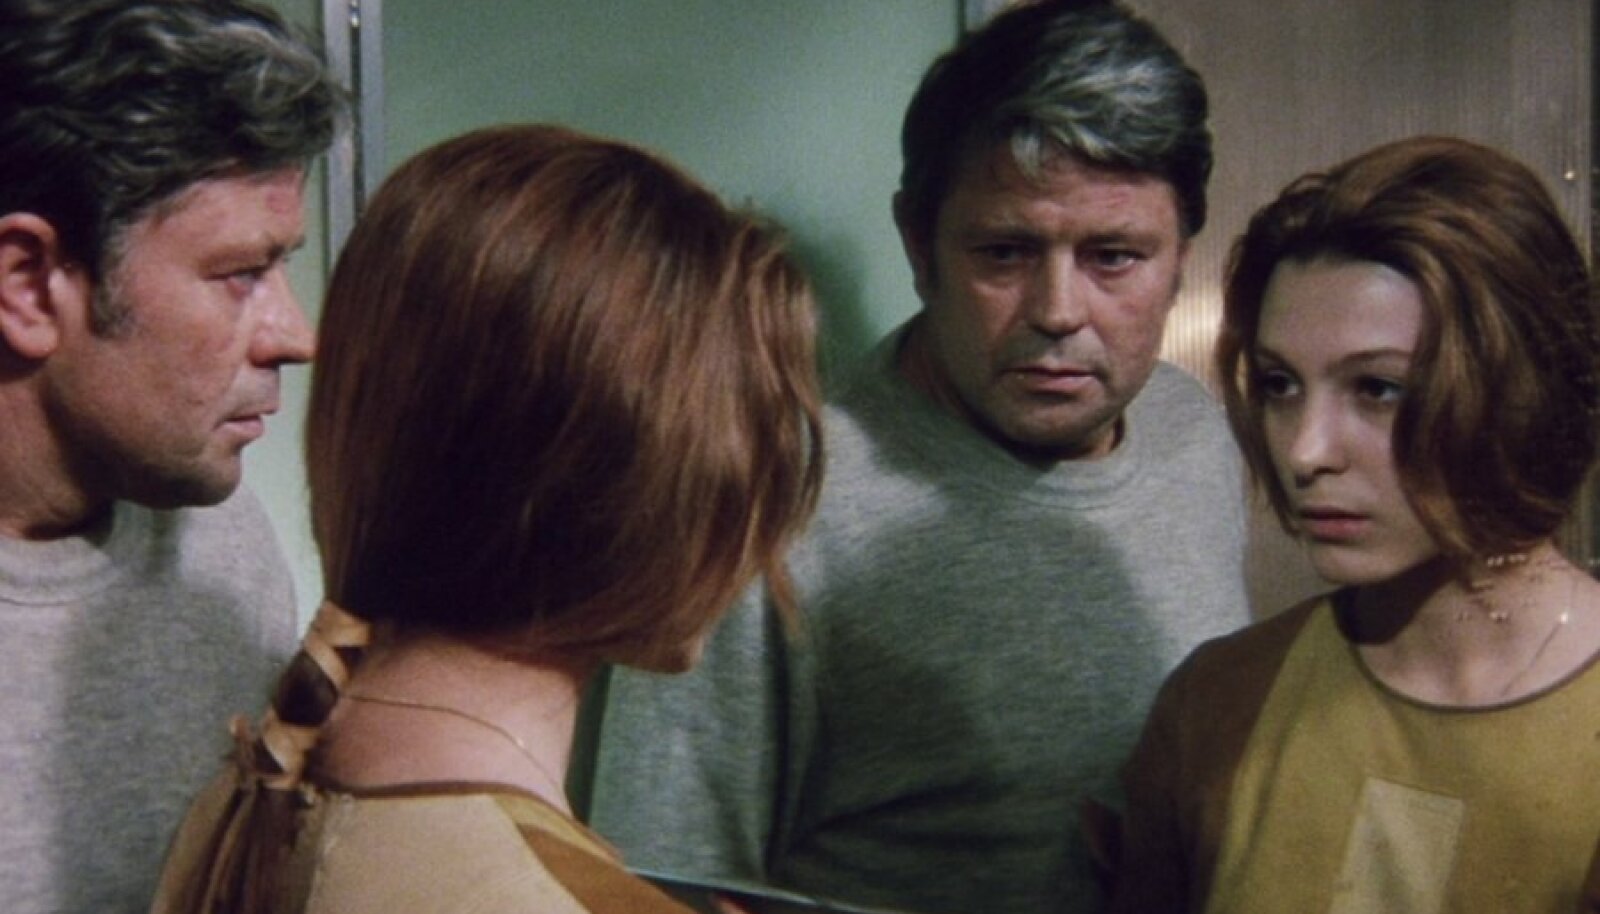 O desenvolvimento da personagem Hari em "Solaris" (1970) reflete na emancipação feminina que estava acontecendo naquela década..